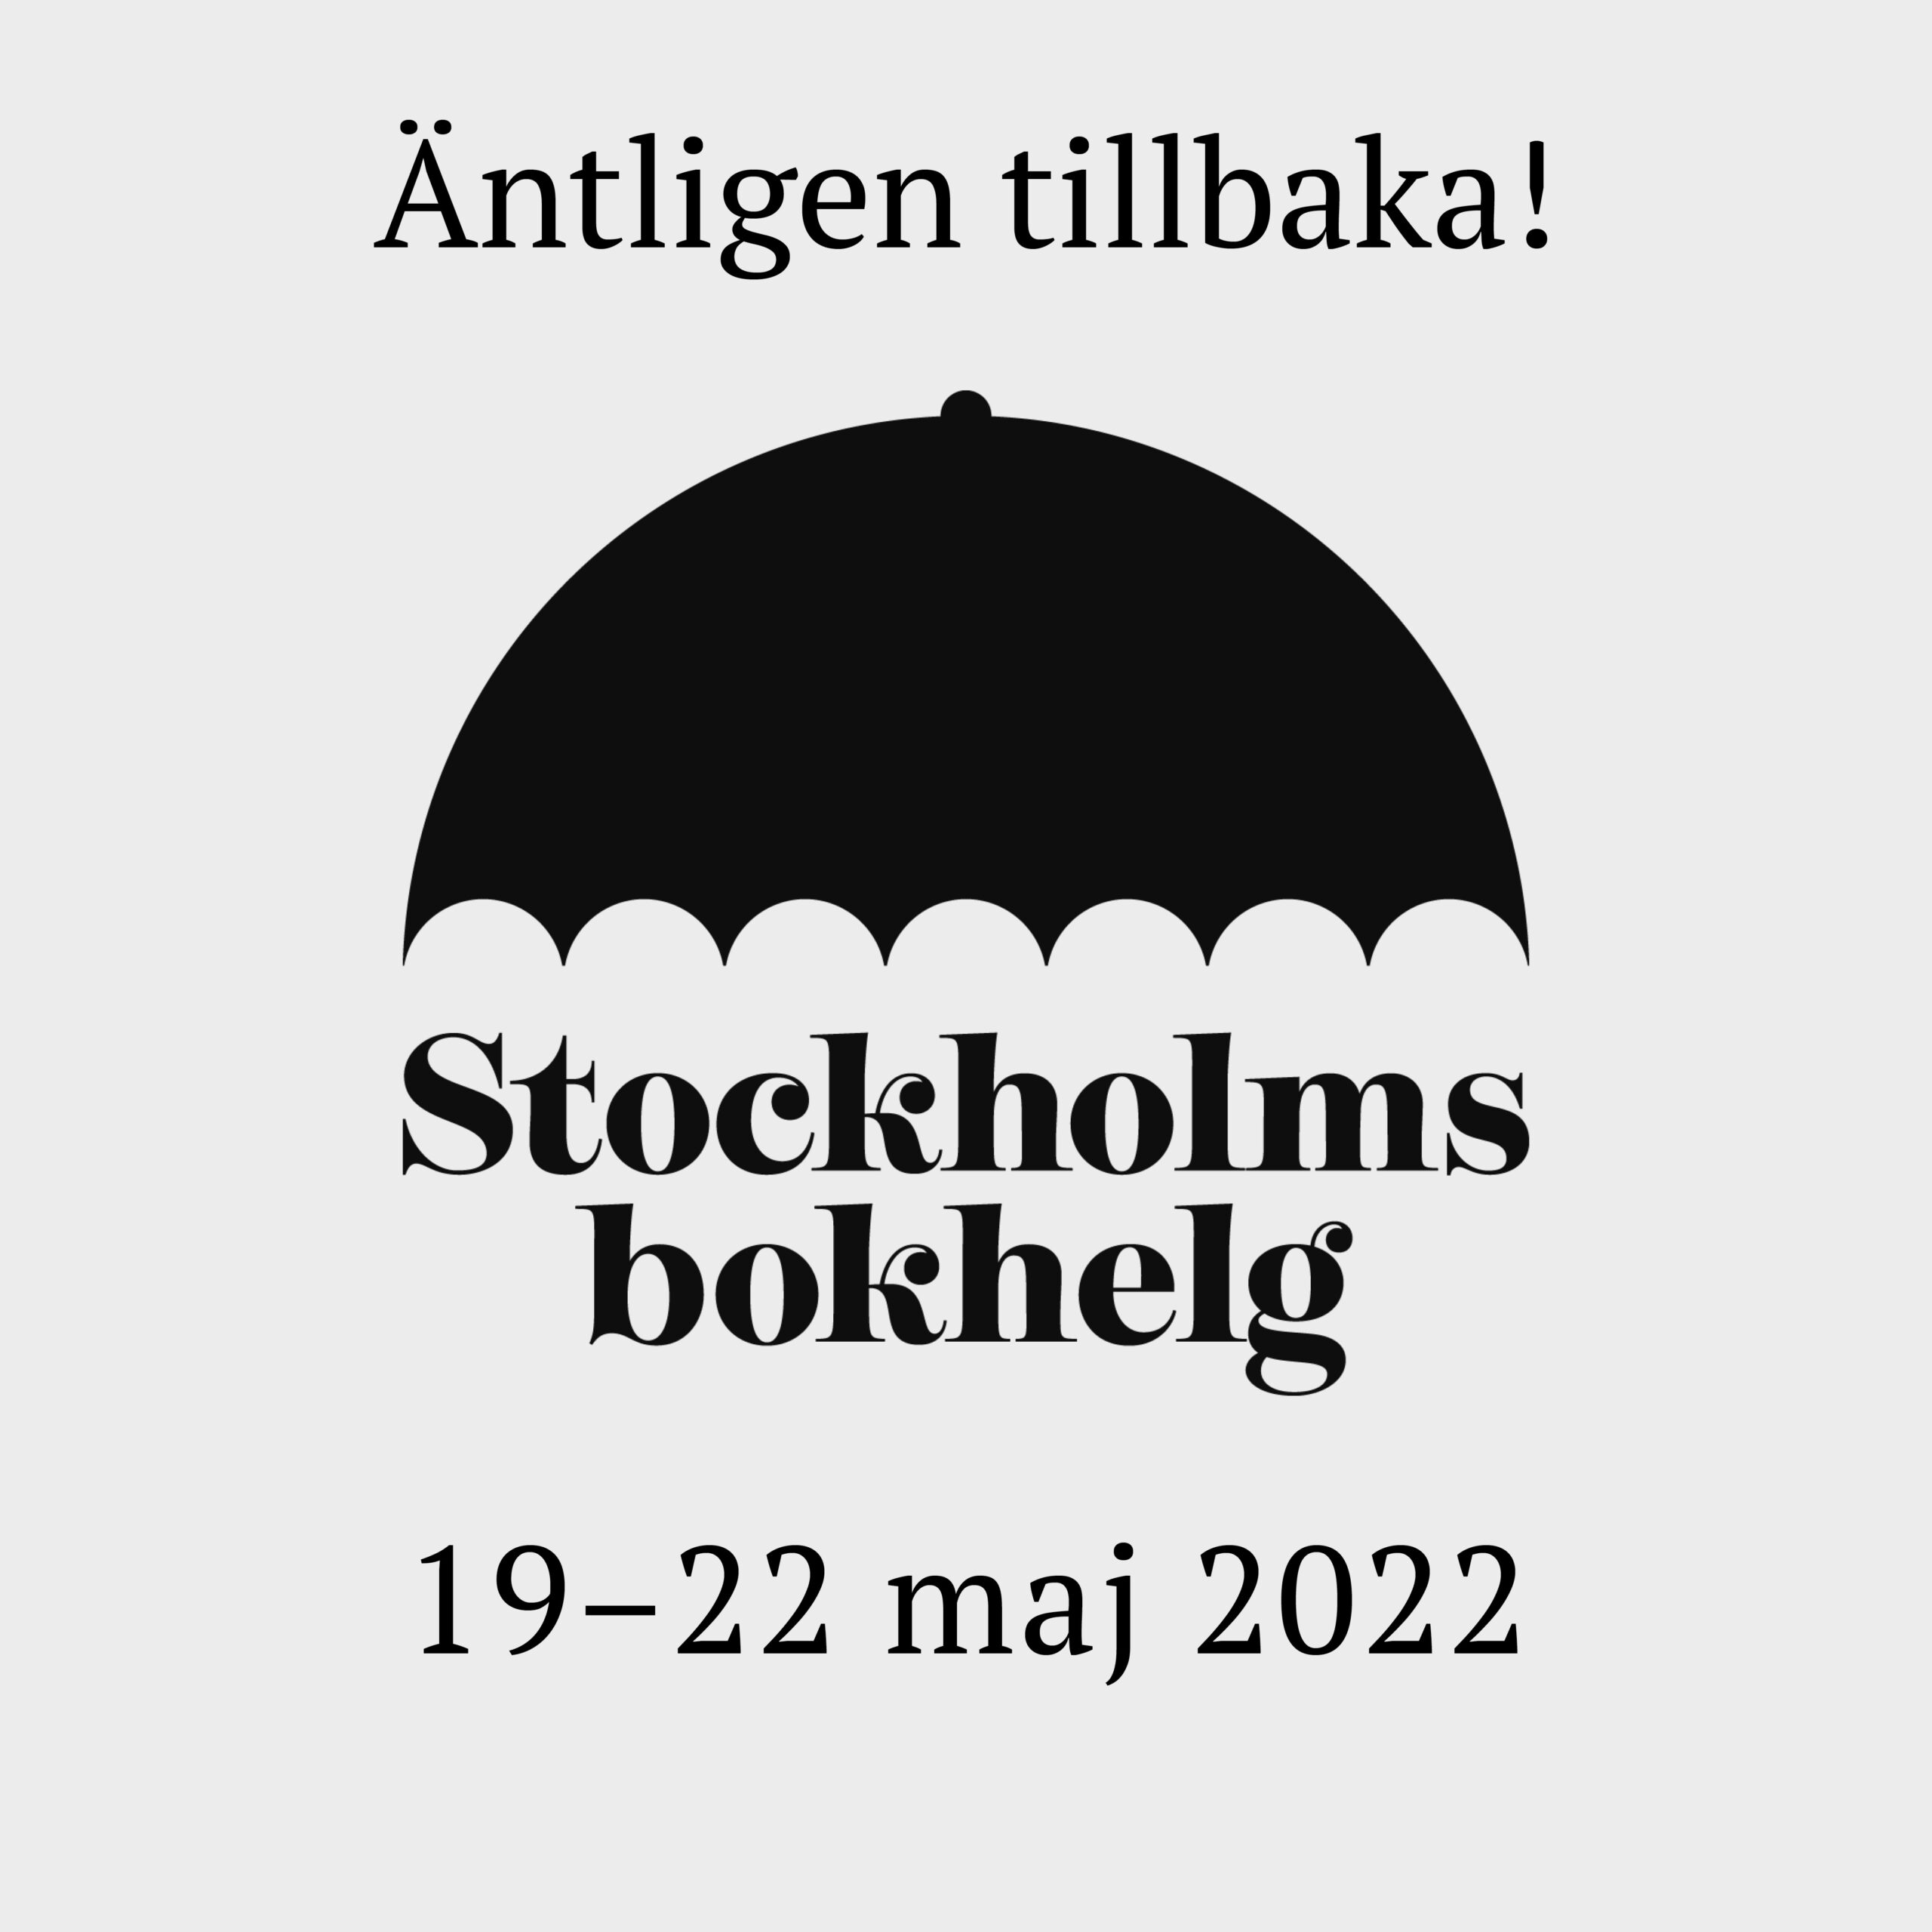 LB Förlag på Stockholms bokhelg